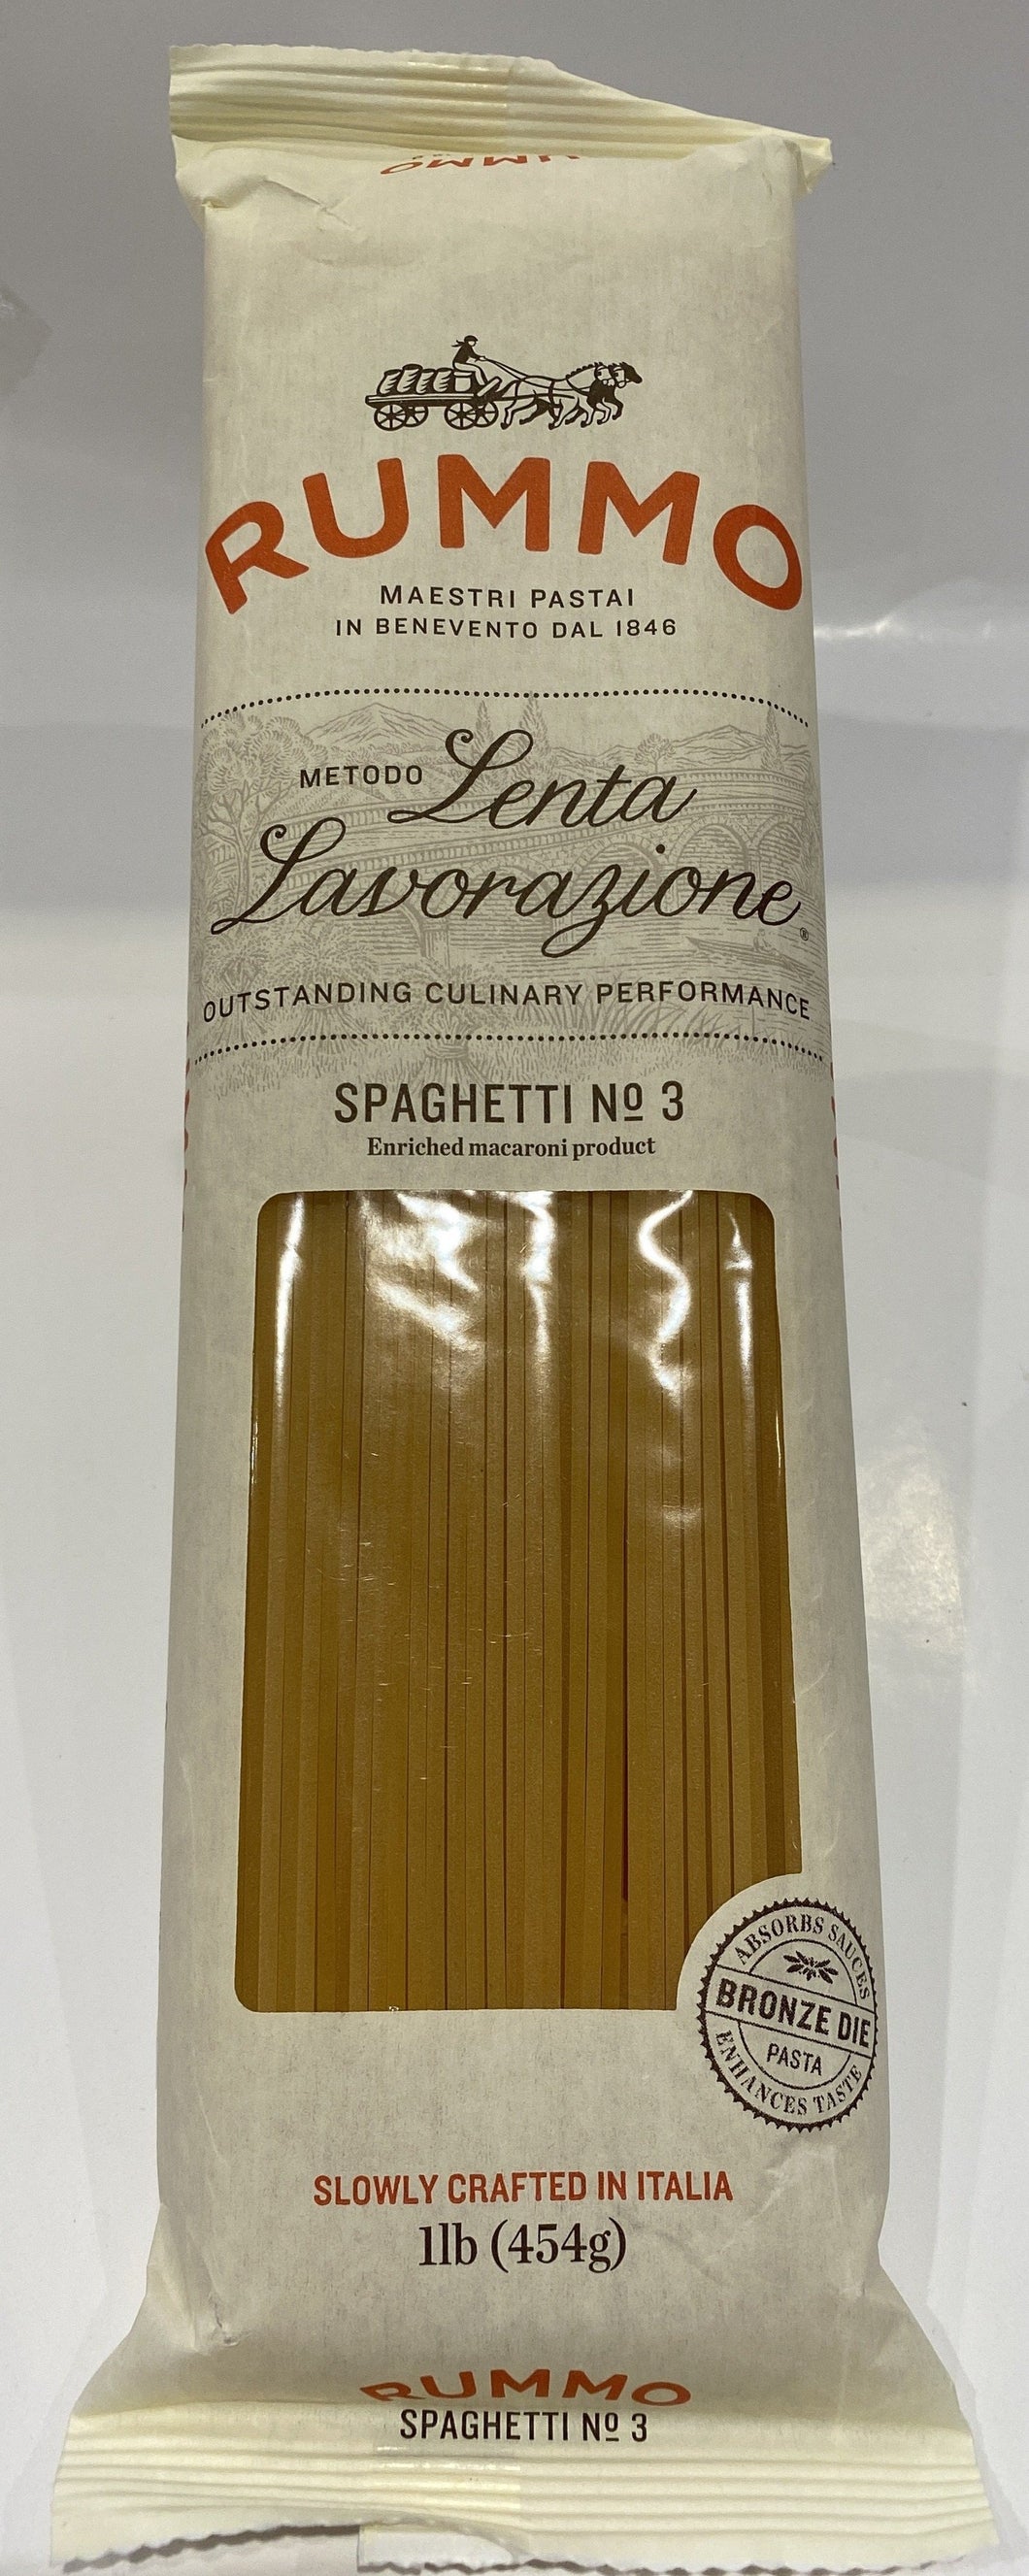 Rummo - Spaghetti #3 Pasta - 454g (16 oz)